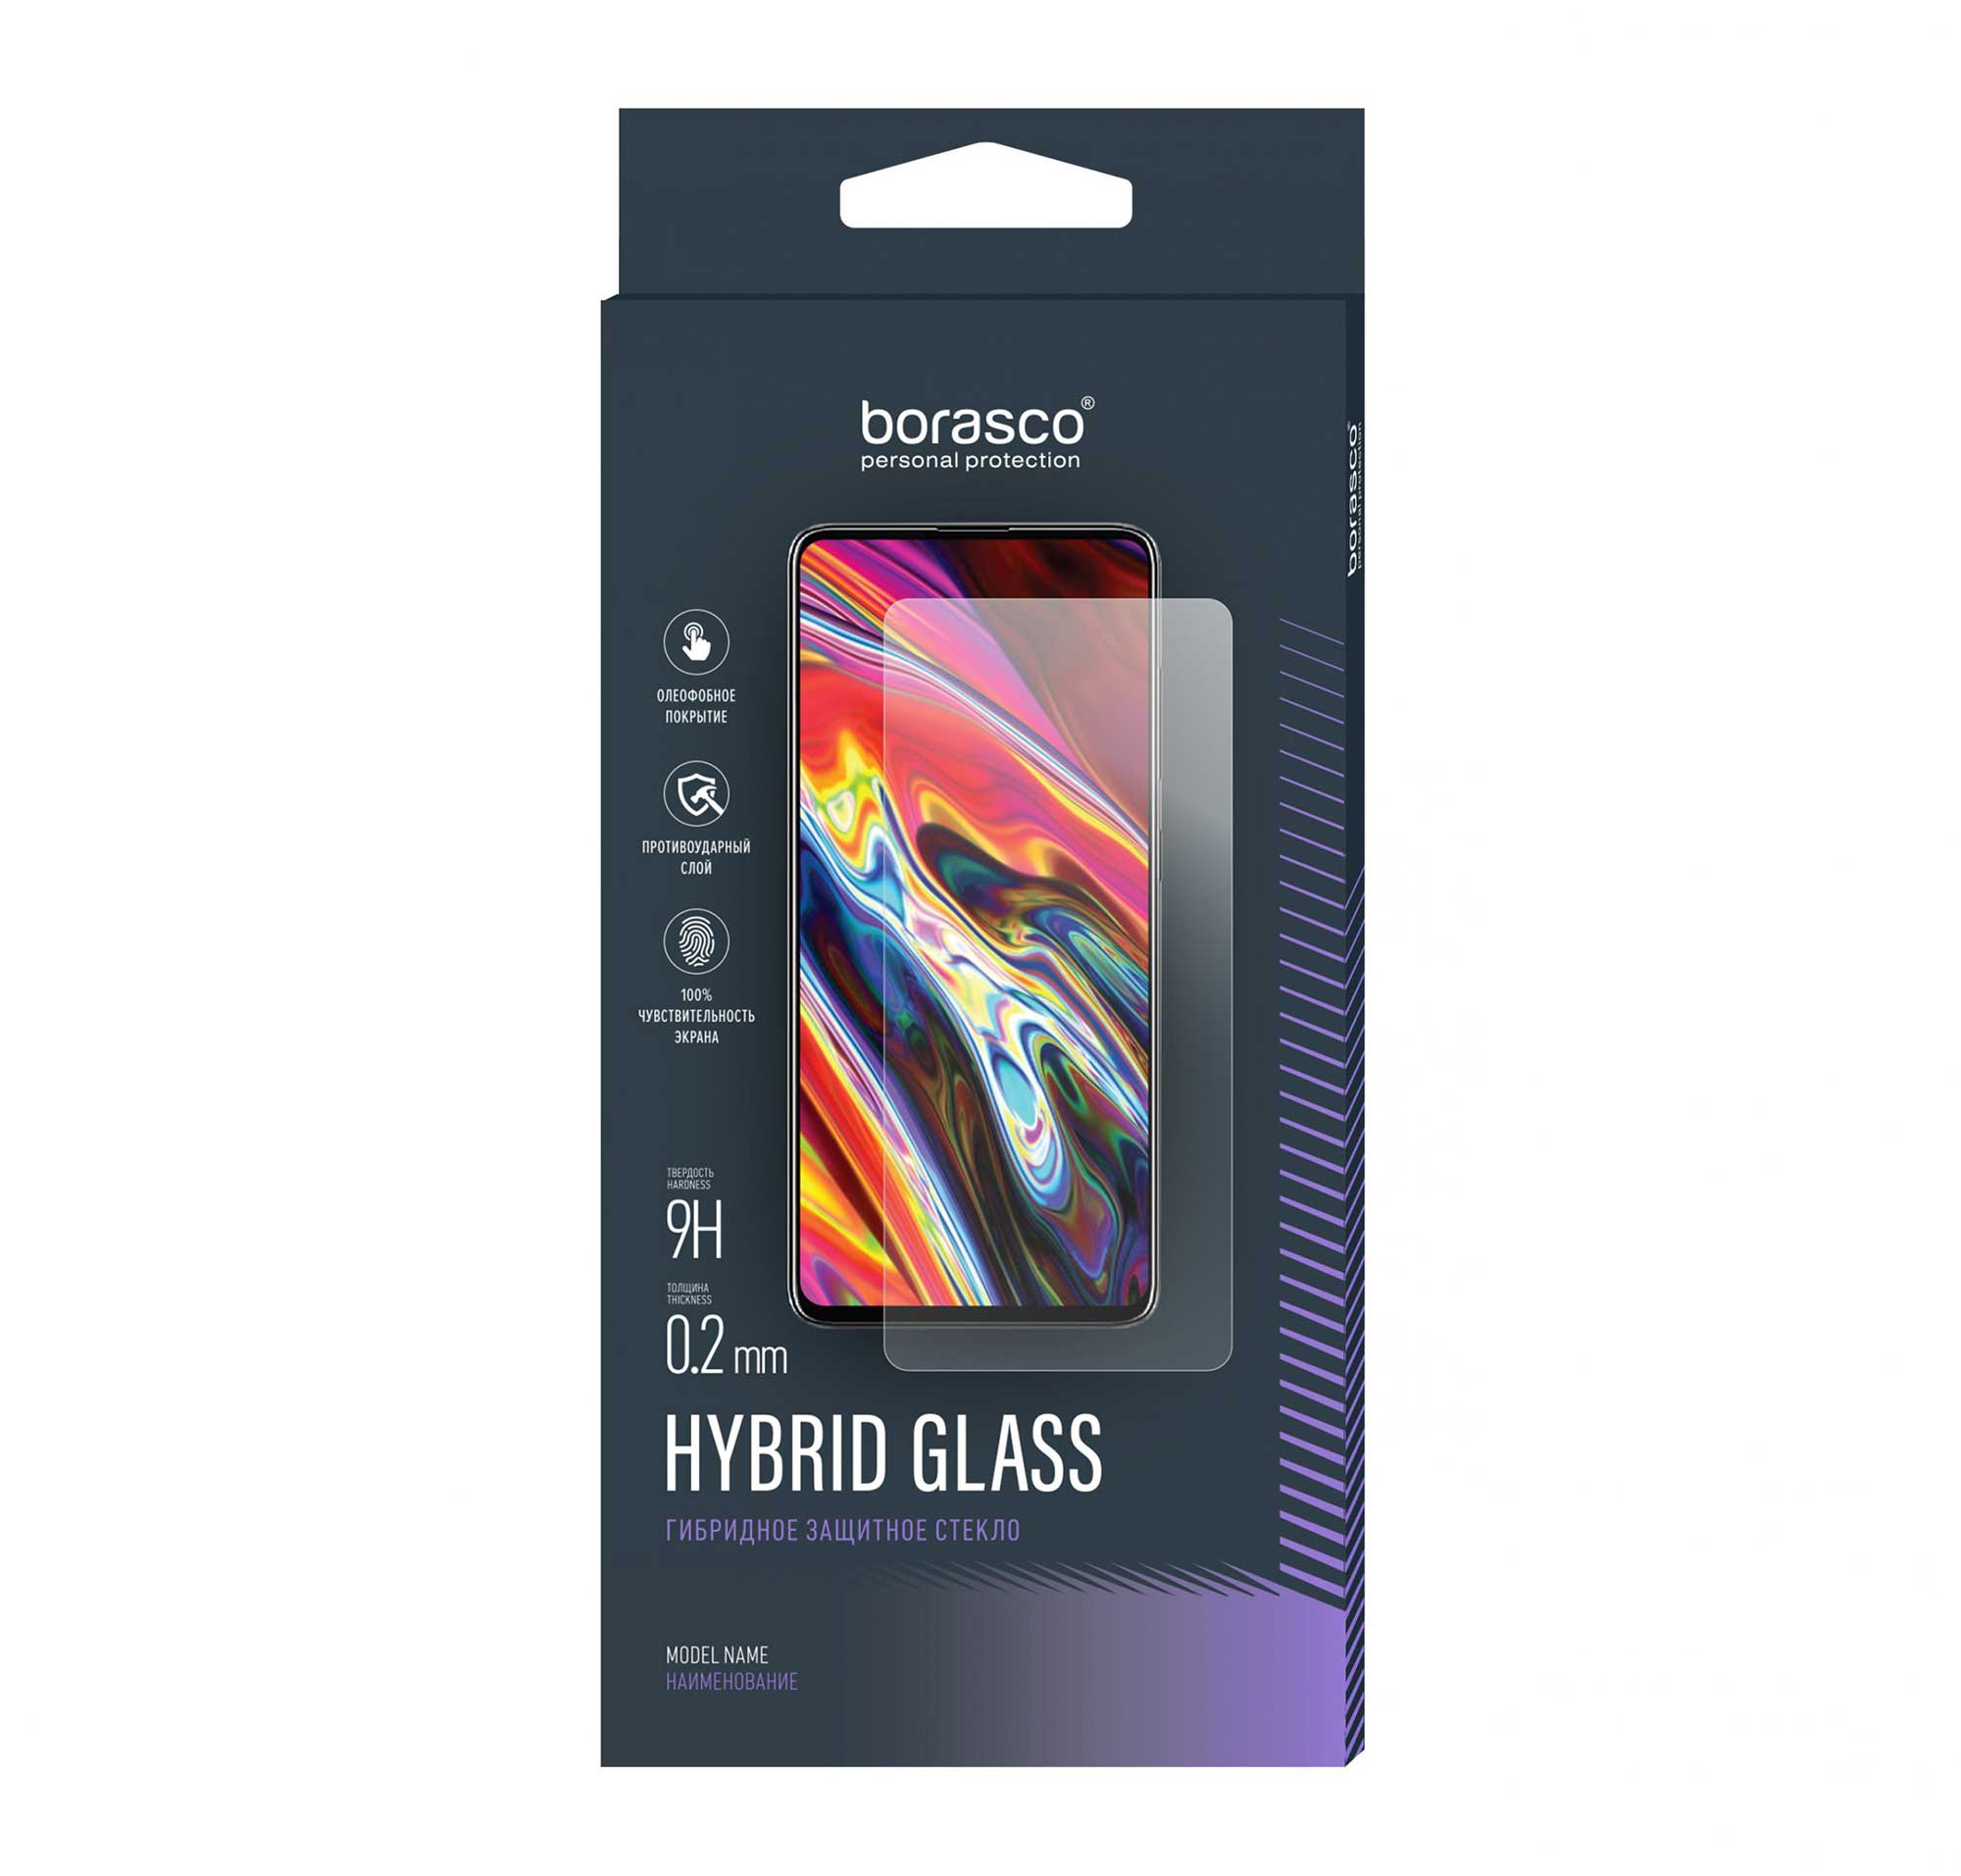 Защитное стекло BoraSCO Hybrid Glass для BQ 4030G NICE MINI bq 4030g nice mini gold